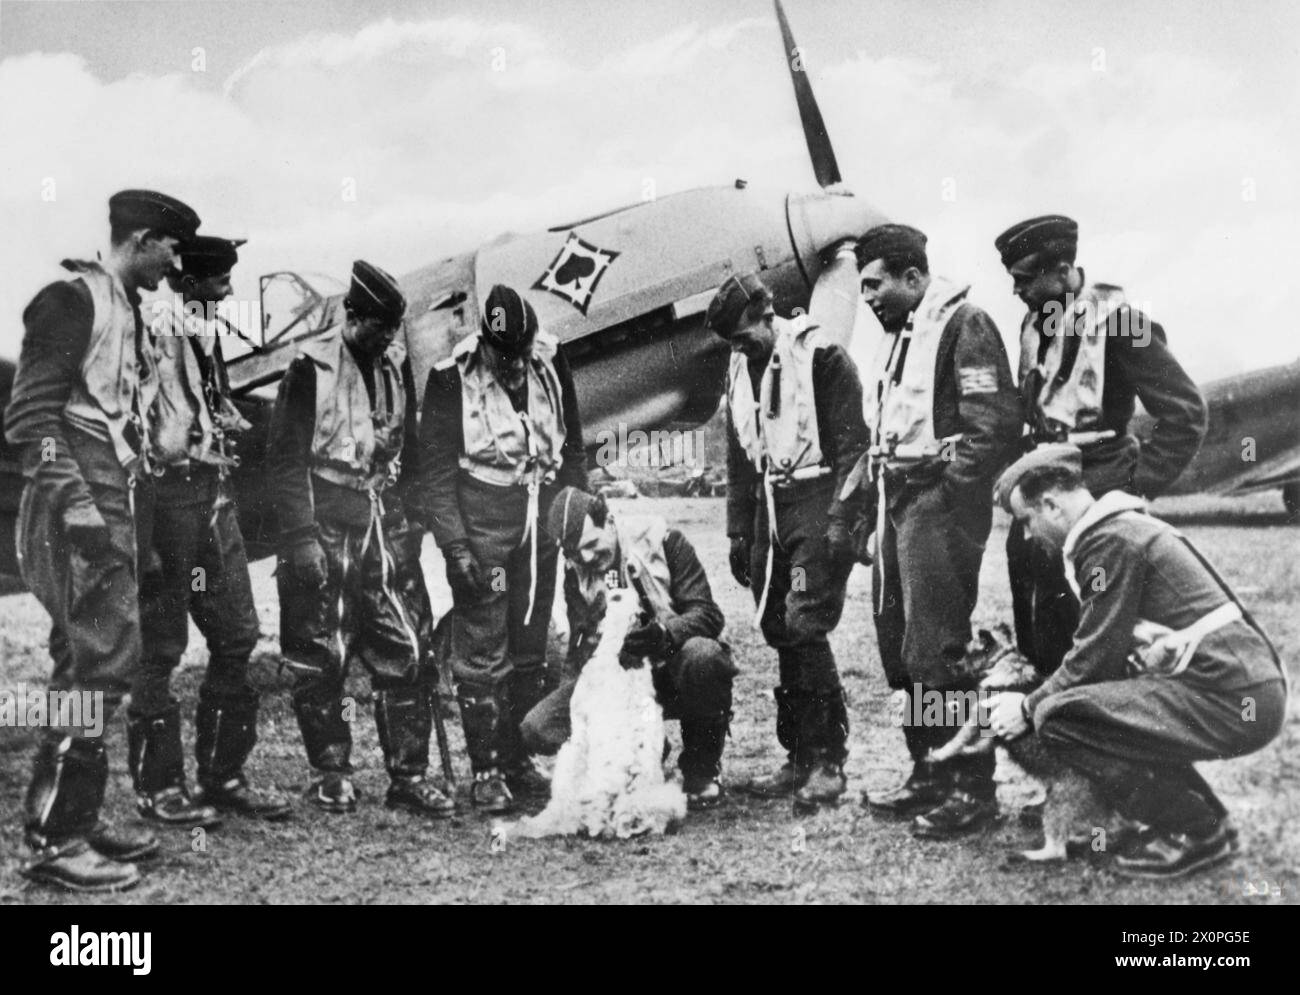 LA BATAILLE D'ANGLETERRE, JUILLET-NOVEMBRE 1940 - neuf pilotes de l'aile de chasse Pik-as de la Luftwaffe Jagdgeschwader 53 (JG 53) avec leurs chiens mascottes devant l'un de leurs Messerschmitt Bf 109, 1940 de l'armée de l'air allemande Banque D'Images